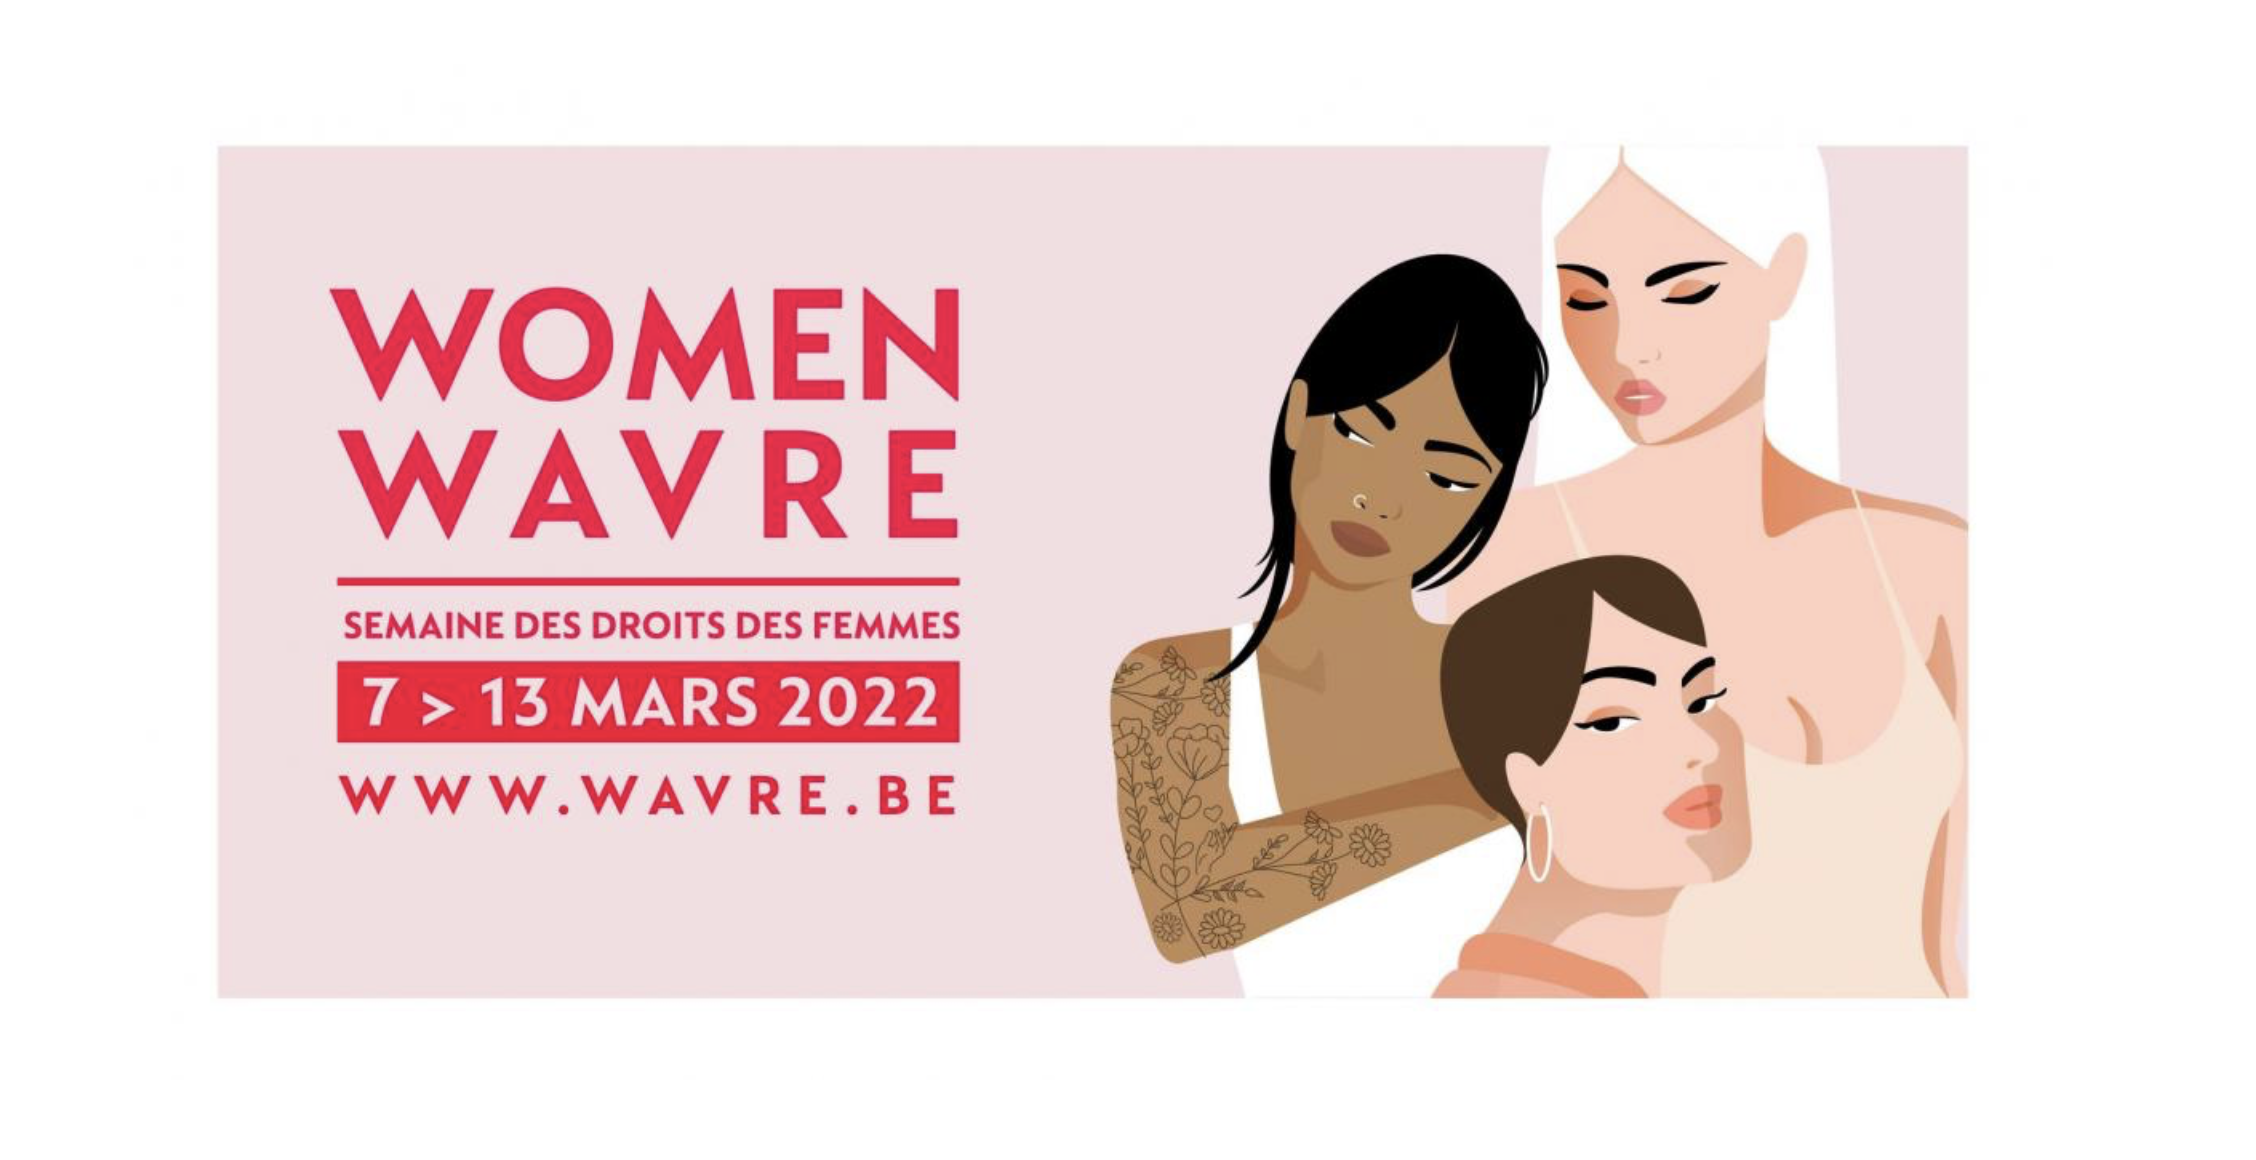 WOMEN WAVRE 2022, LA SEMAINE DES DROITS DES FEMMES | Du 8 au 13 mars 2022